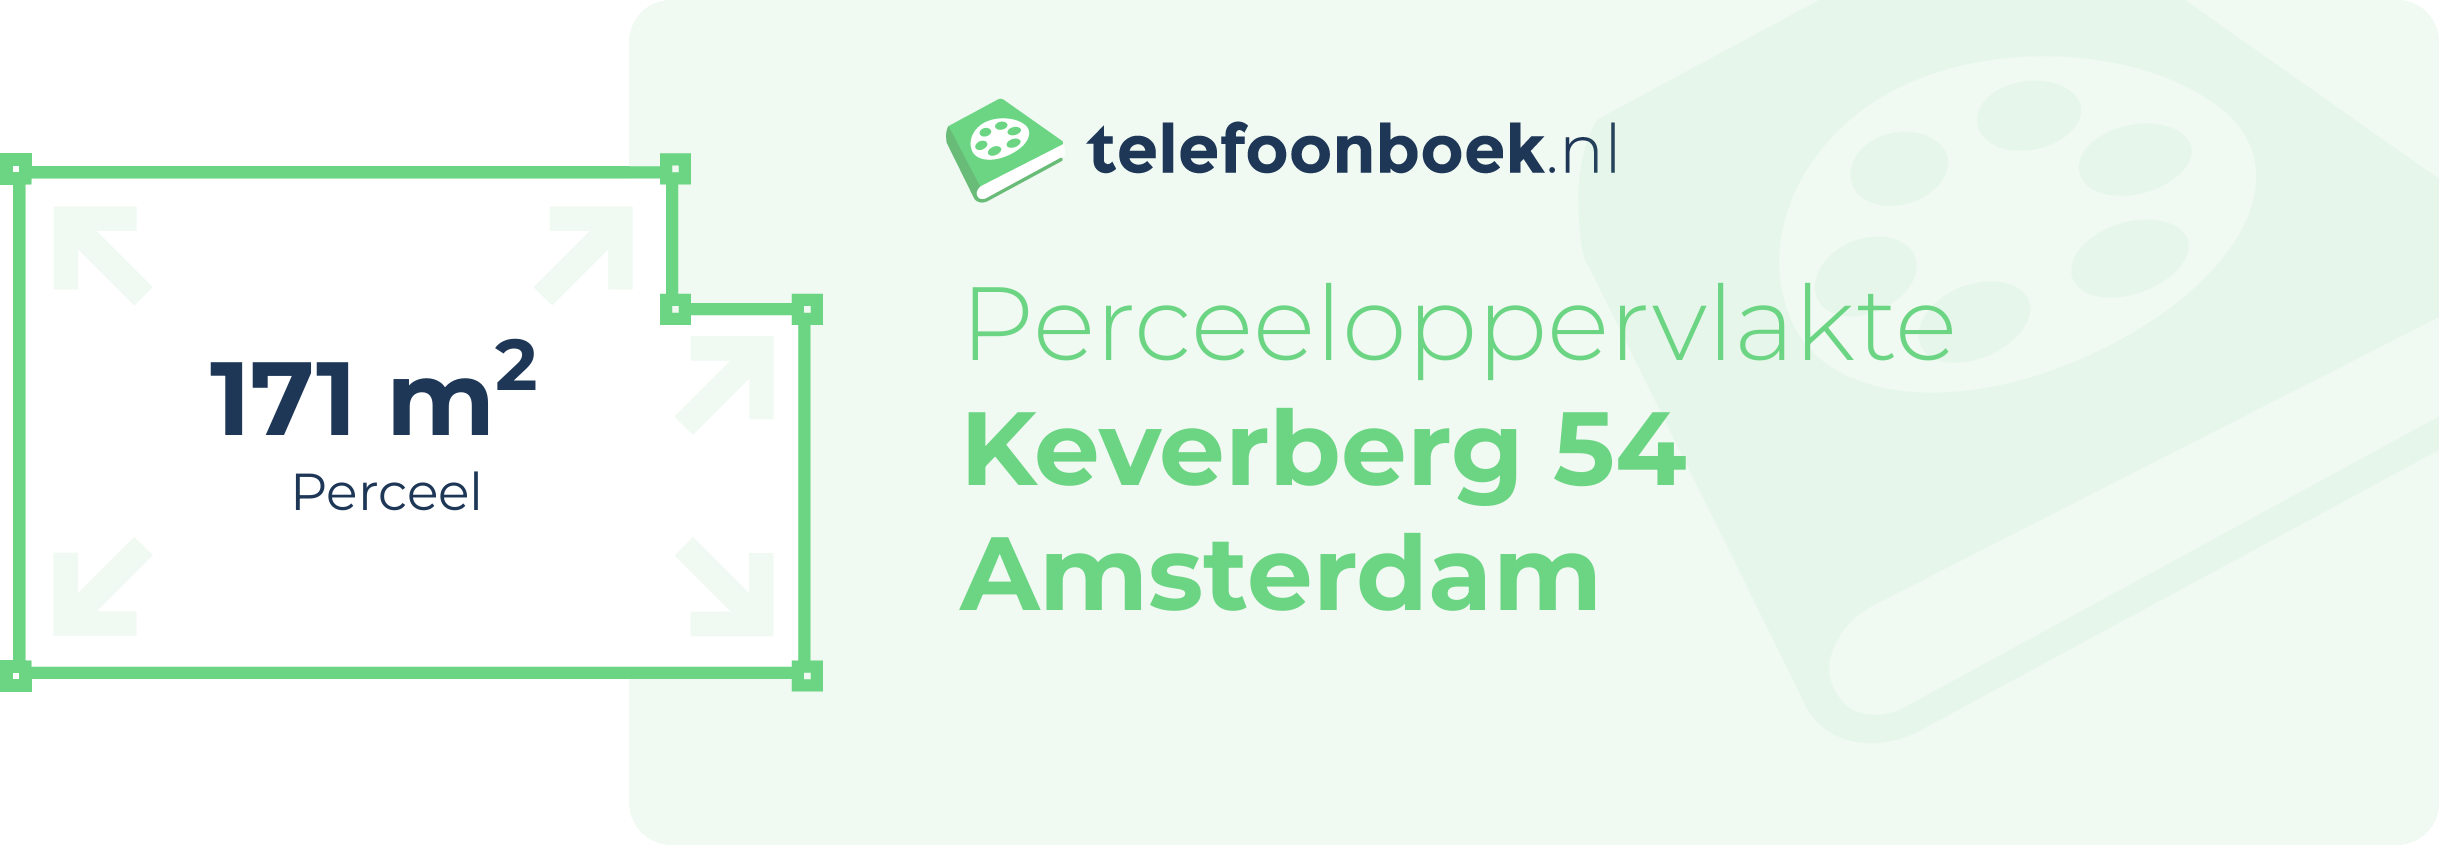 Perceeloppervlakte Keverberg 54 Amsterdam